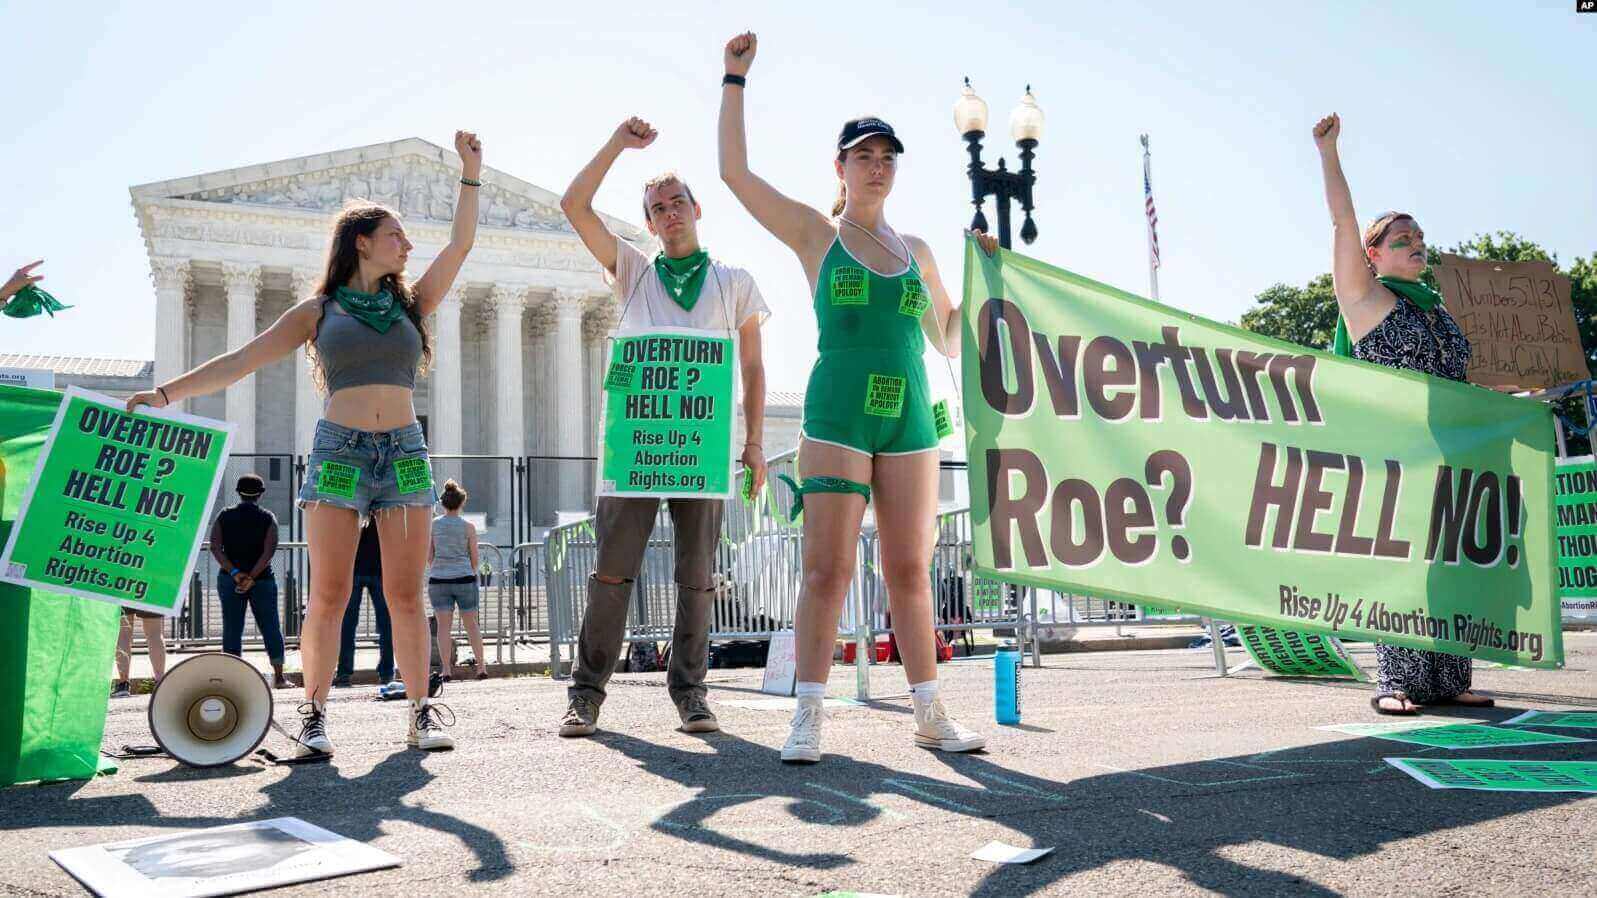 Manifestantes piden apoyo frente a la Corte Suprema para quienes protestan sobre el nuevo mandato referente al derecho al aborto, el 15 de junio de 2022, en Washington DC.